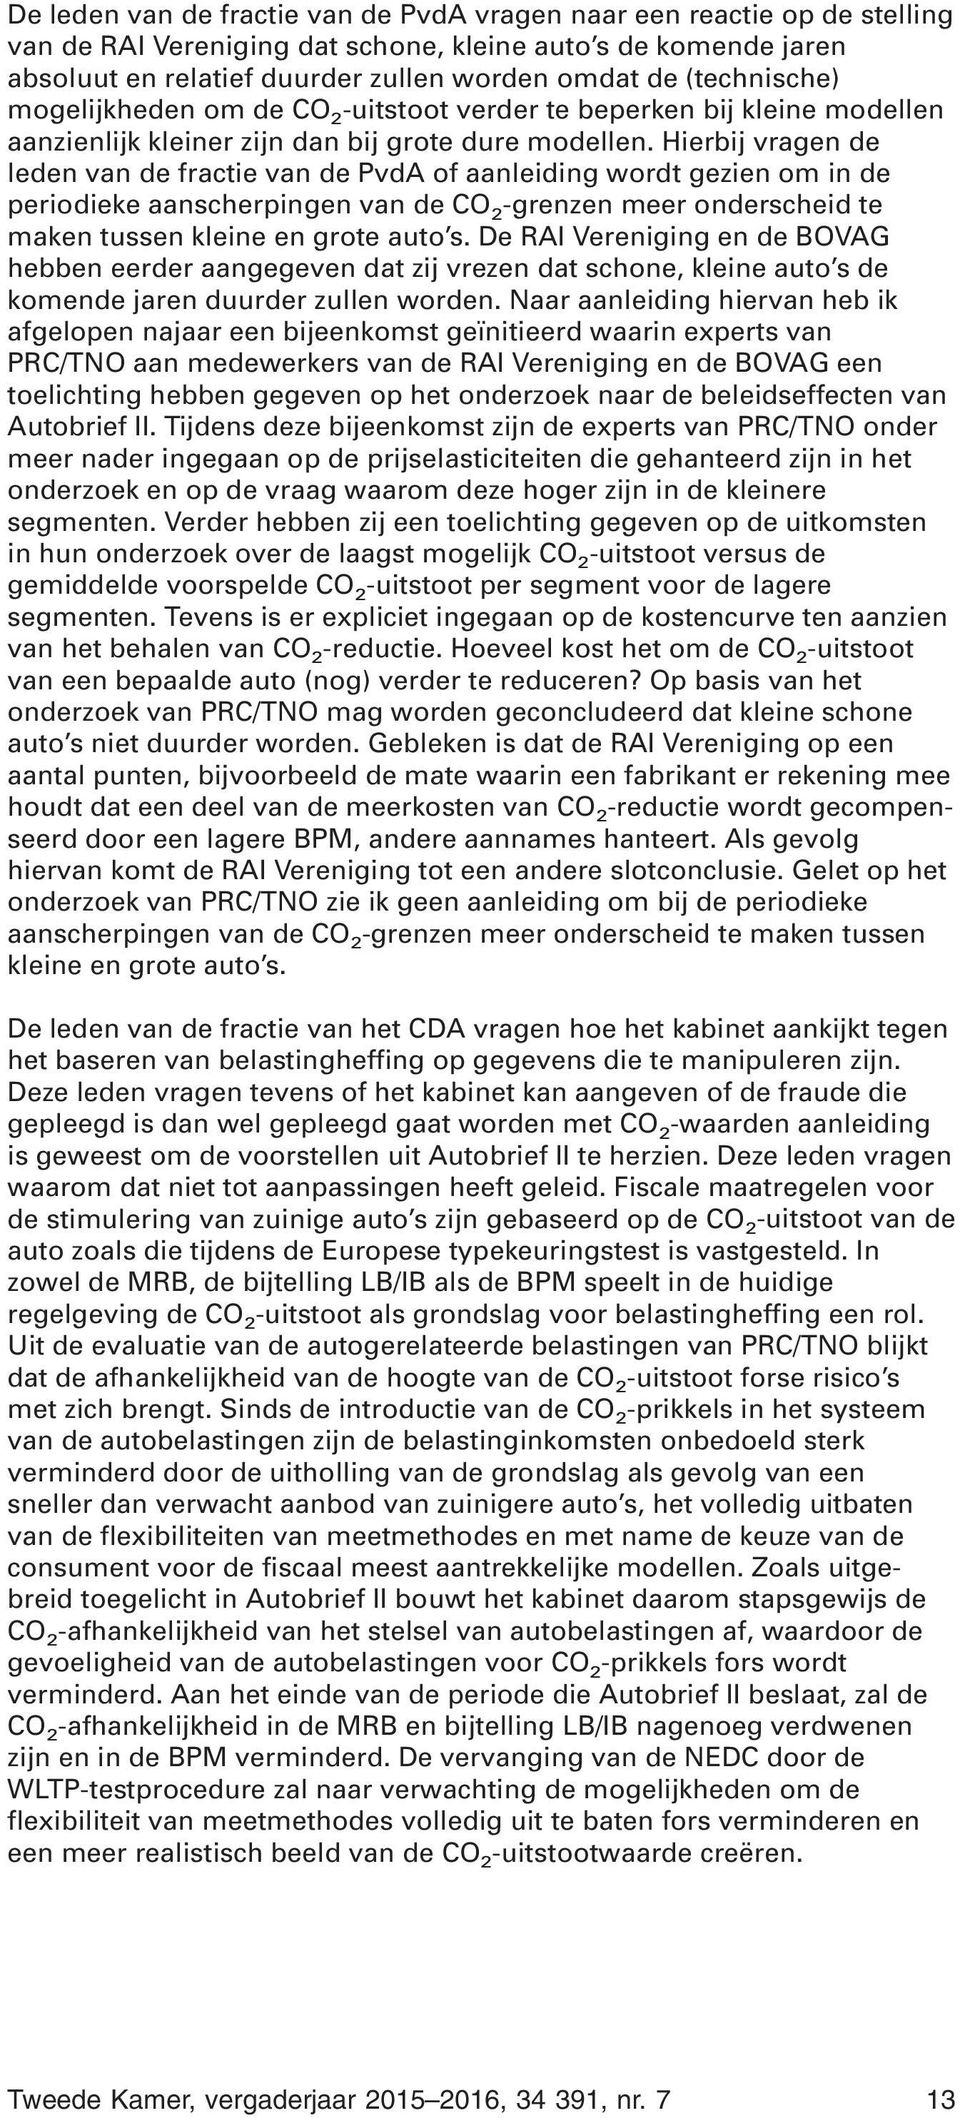 Hierbij vragen de leden van de fractie van de PvdA of aanleiding wordt gezien om in de periodieke aanscherpingen van de CO 2 -grenzen meer onderscheid te maken tussen kleine en grote auto s.